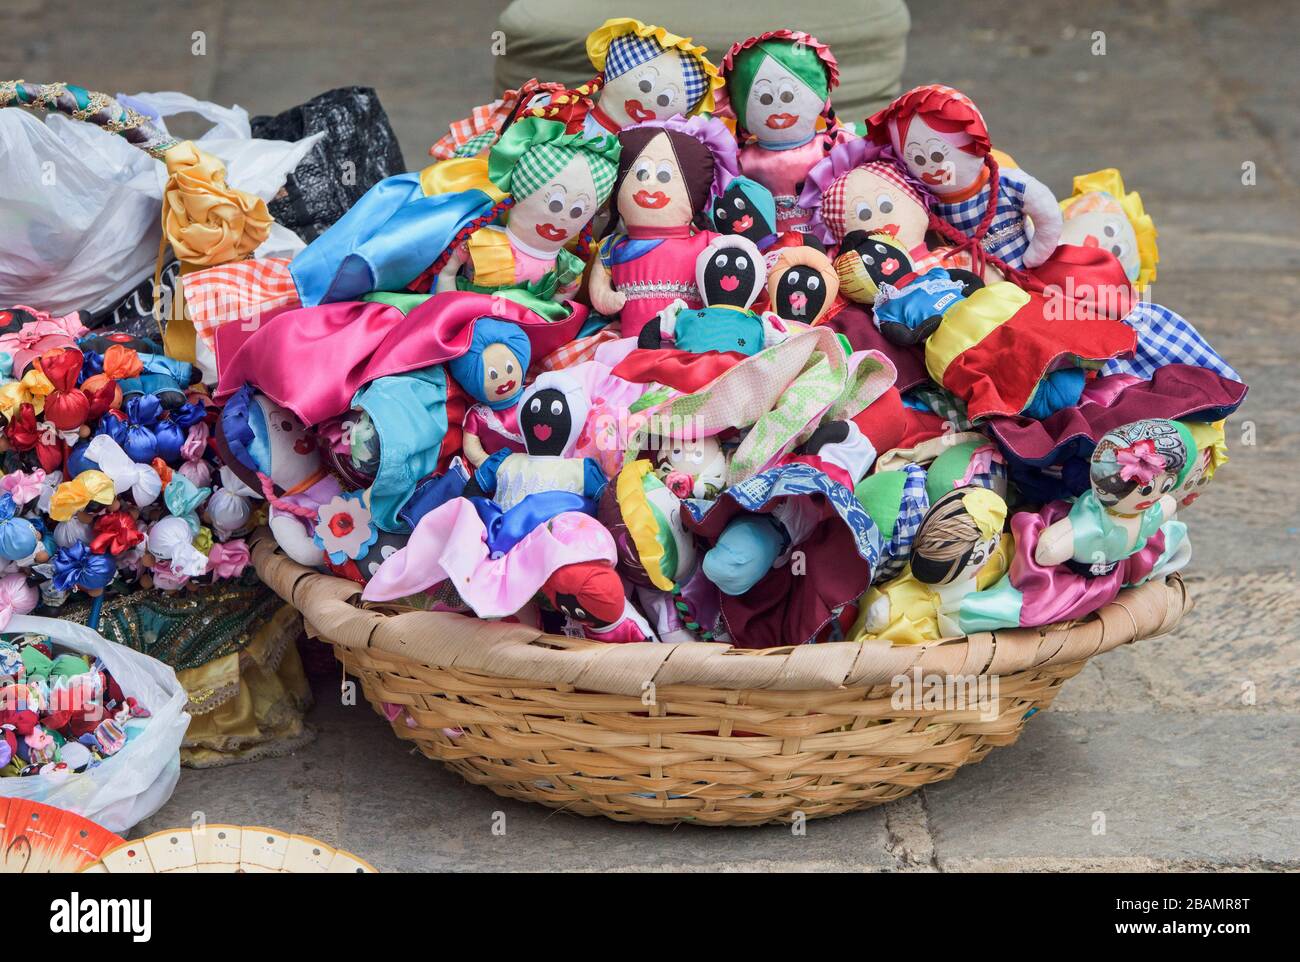 Souvenir dolls, Havana, Cuba Stock Photo